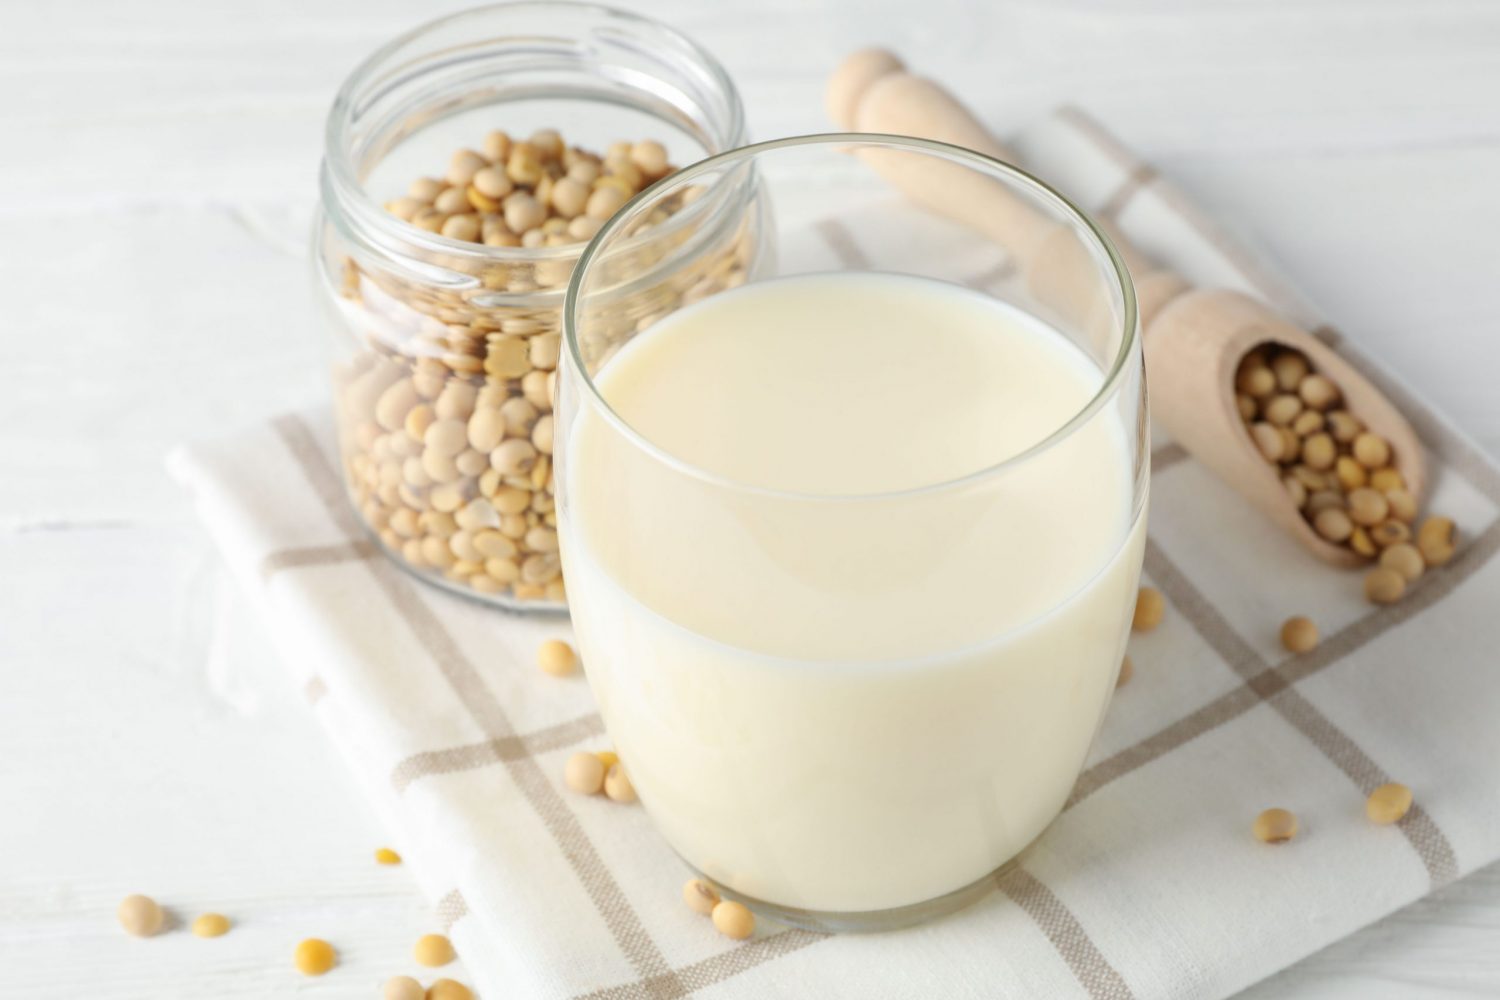 Tác hại của sữa đậu nành đối với phụ nữ: Không tốt cho người suy giáp